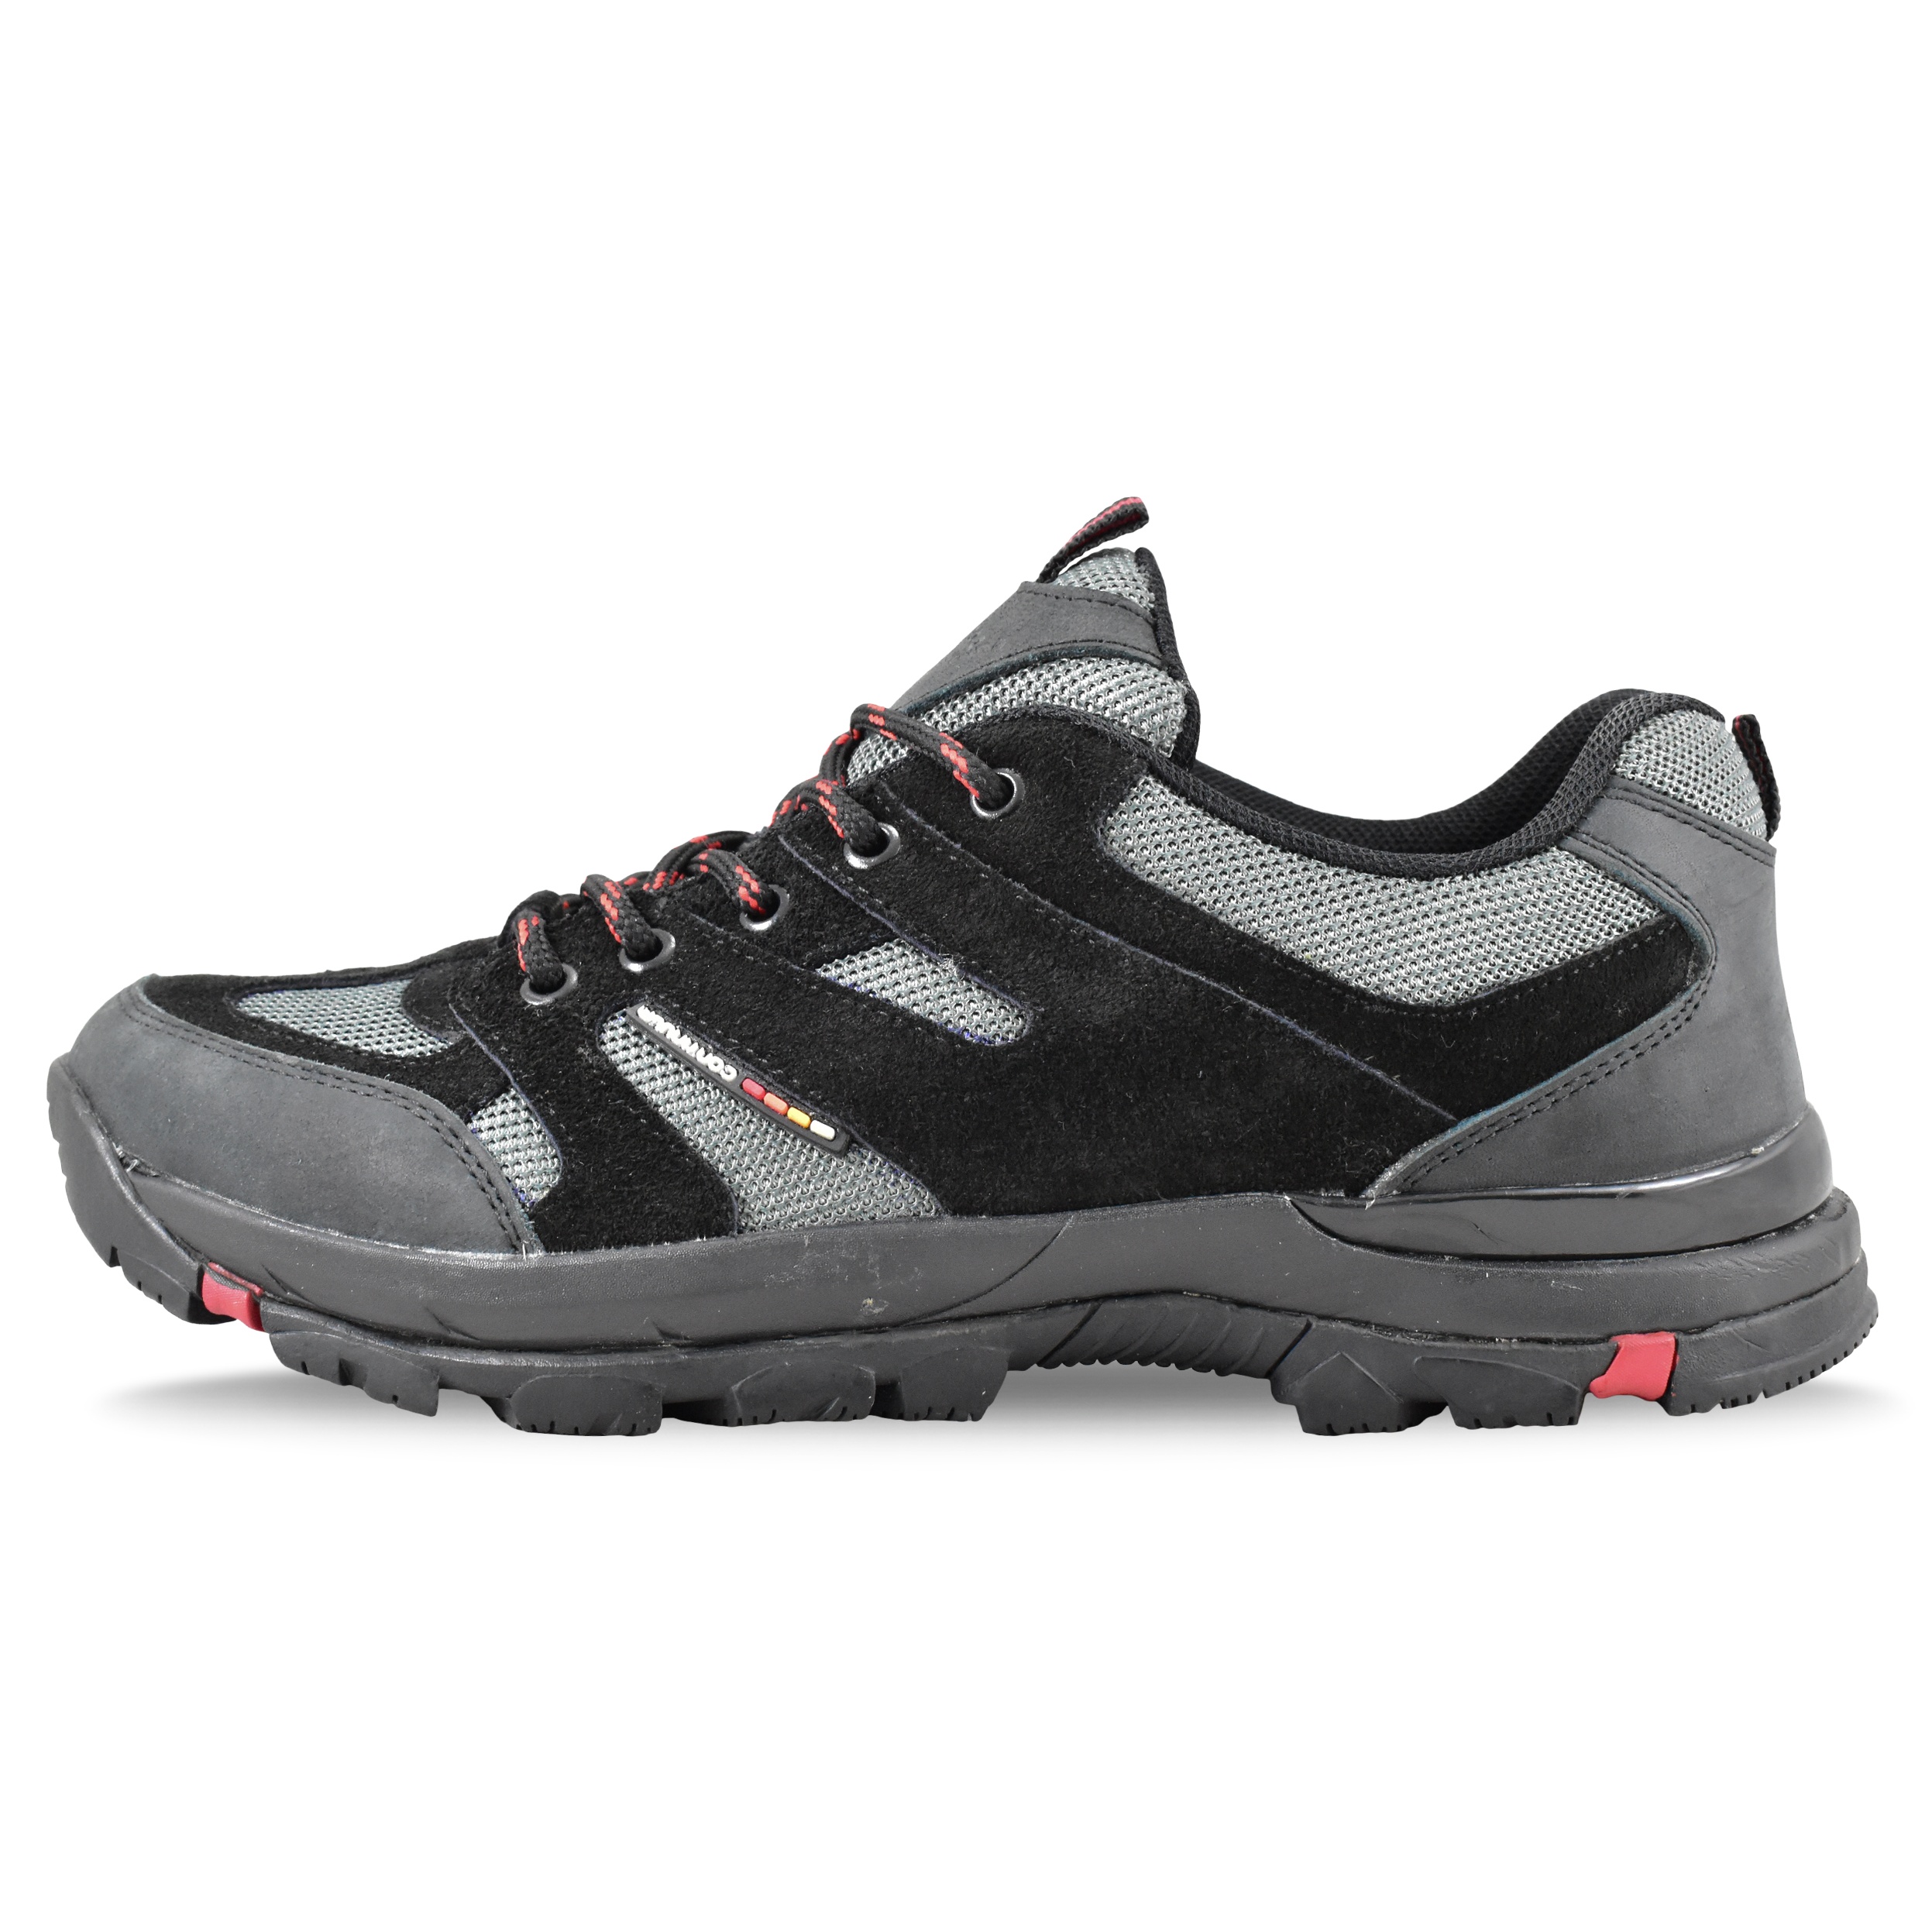 کفش مخصوص پیاده روی مردانه آداک شوز مدل کنتینیوم کد 4734